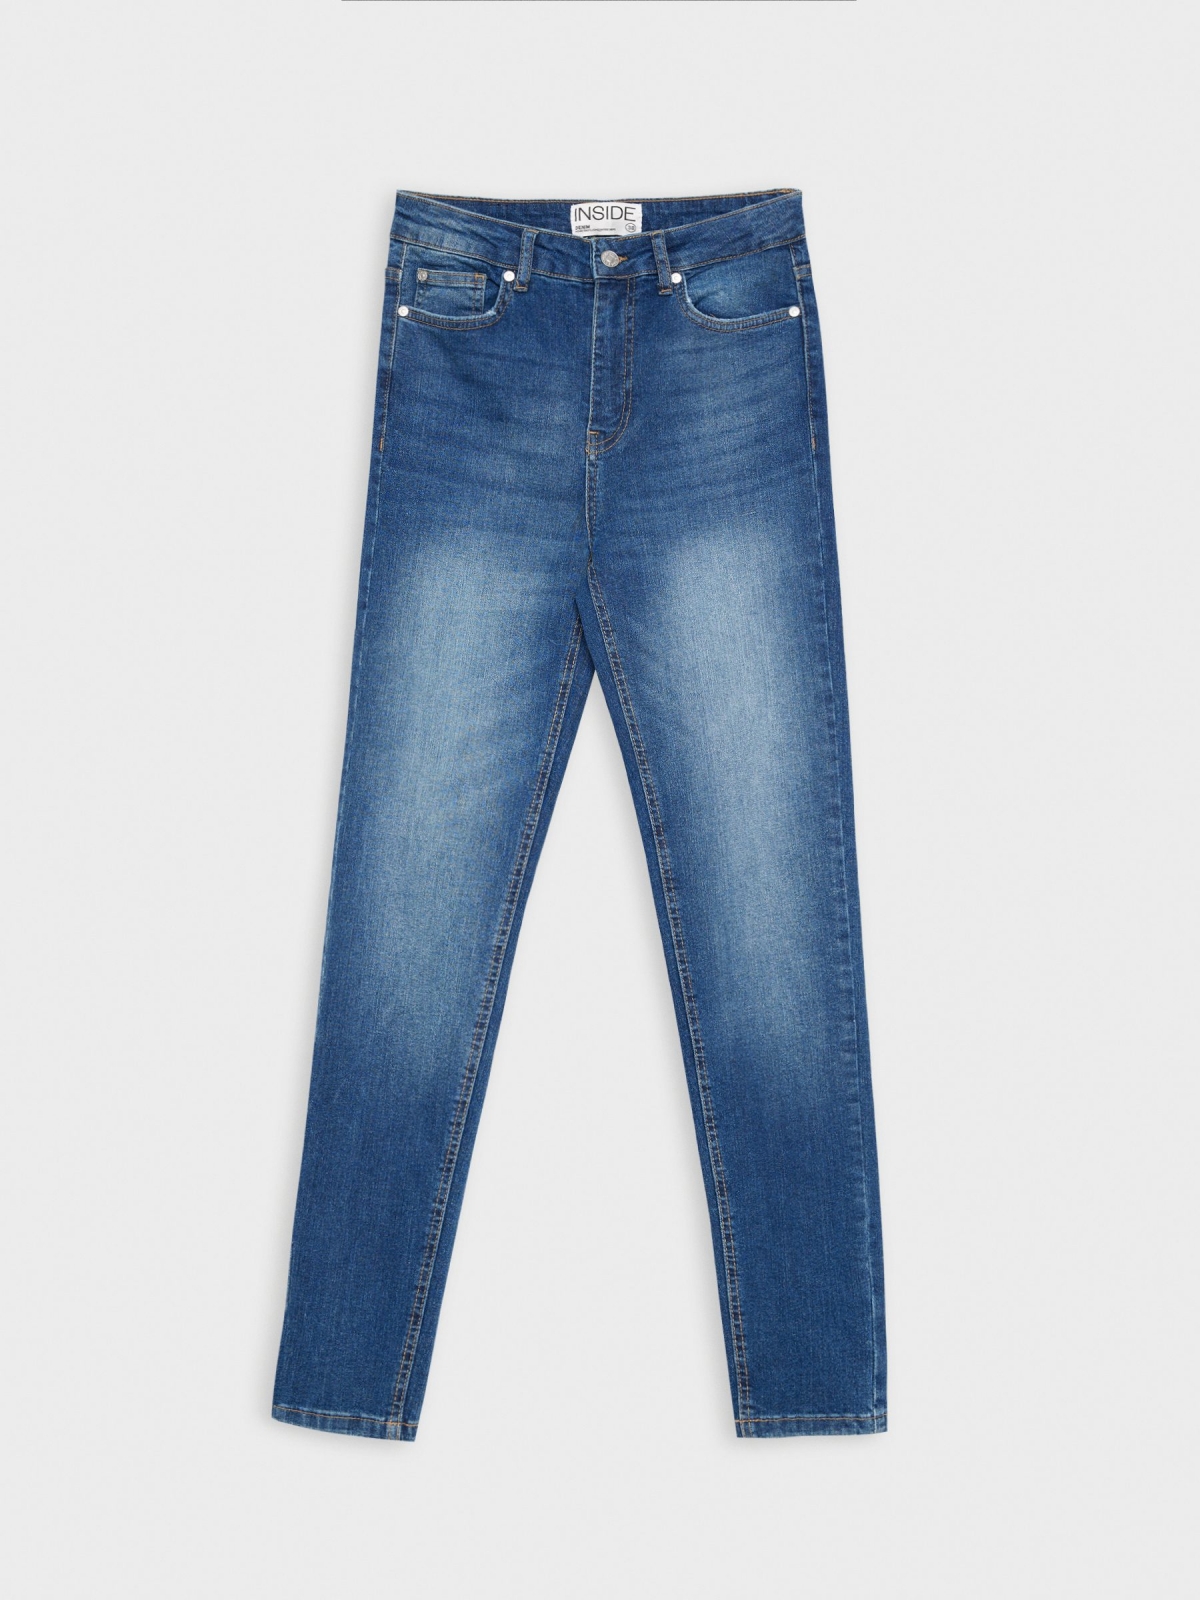  Jeans skinny cintura alta efeito lavado azul marinho